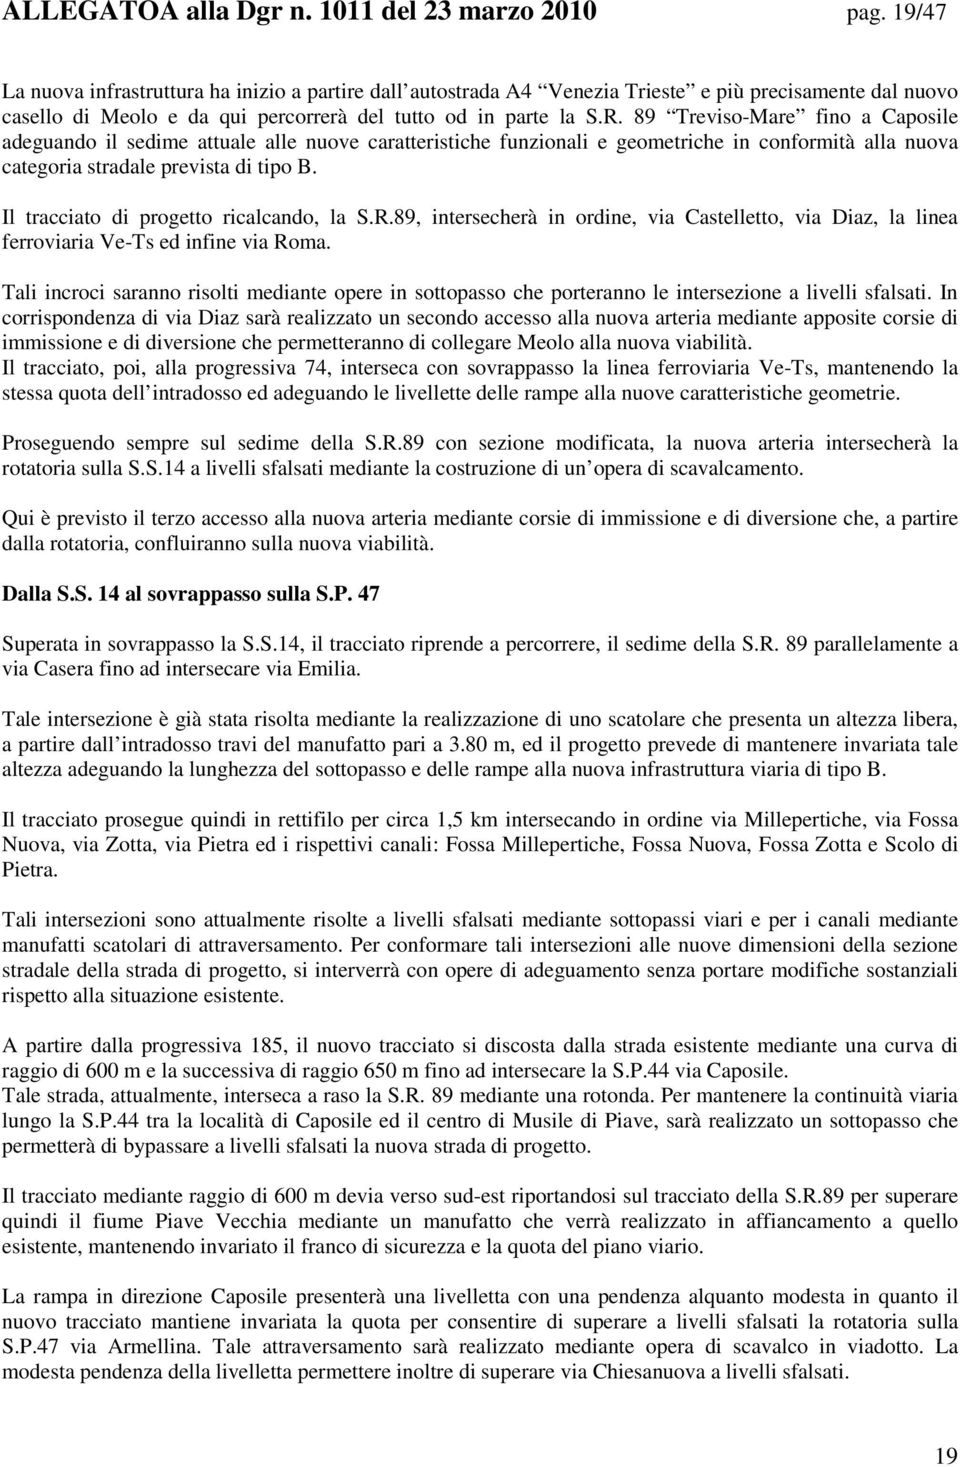 89 Treviso-Mare fino a Caposile adeguando il sedime attuale alle nuove caratteristiche funzionali e geometriche in conformità alla nuova categoria stradale prevista di tipo B.